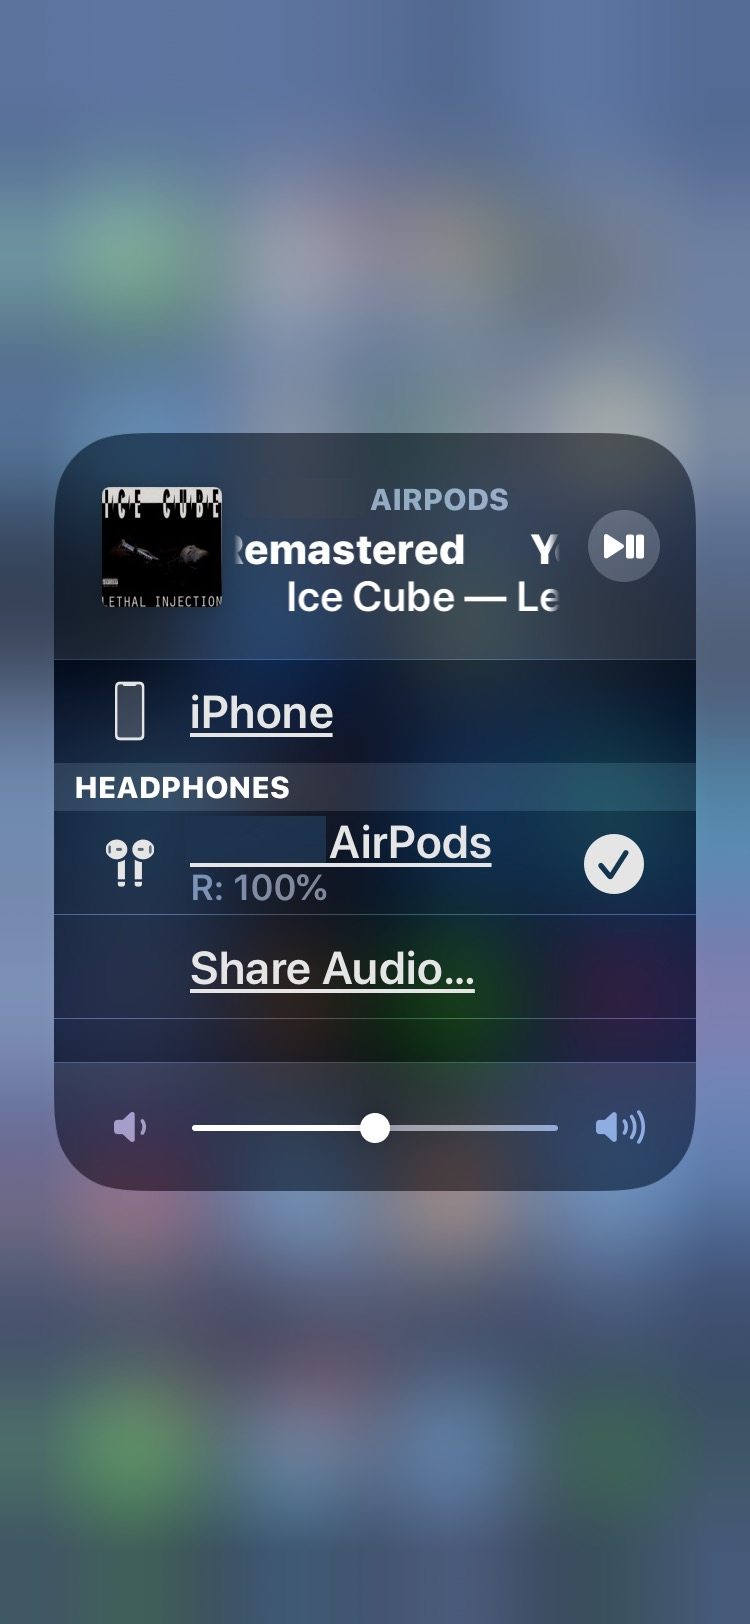 AirPods 从另一个 Apple 切换到当前设备设备”/>   <!--</ol-->
<p>现在您可以在当前设备上使用 AirPods，像往常一样播放音乐或收听播客并尽情享受。</p>
<p>这个过程在 iPhone、iPad 和 iPod touch 上是相同的。如果您<a href=